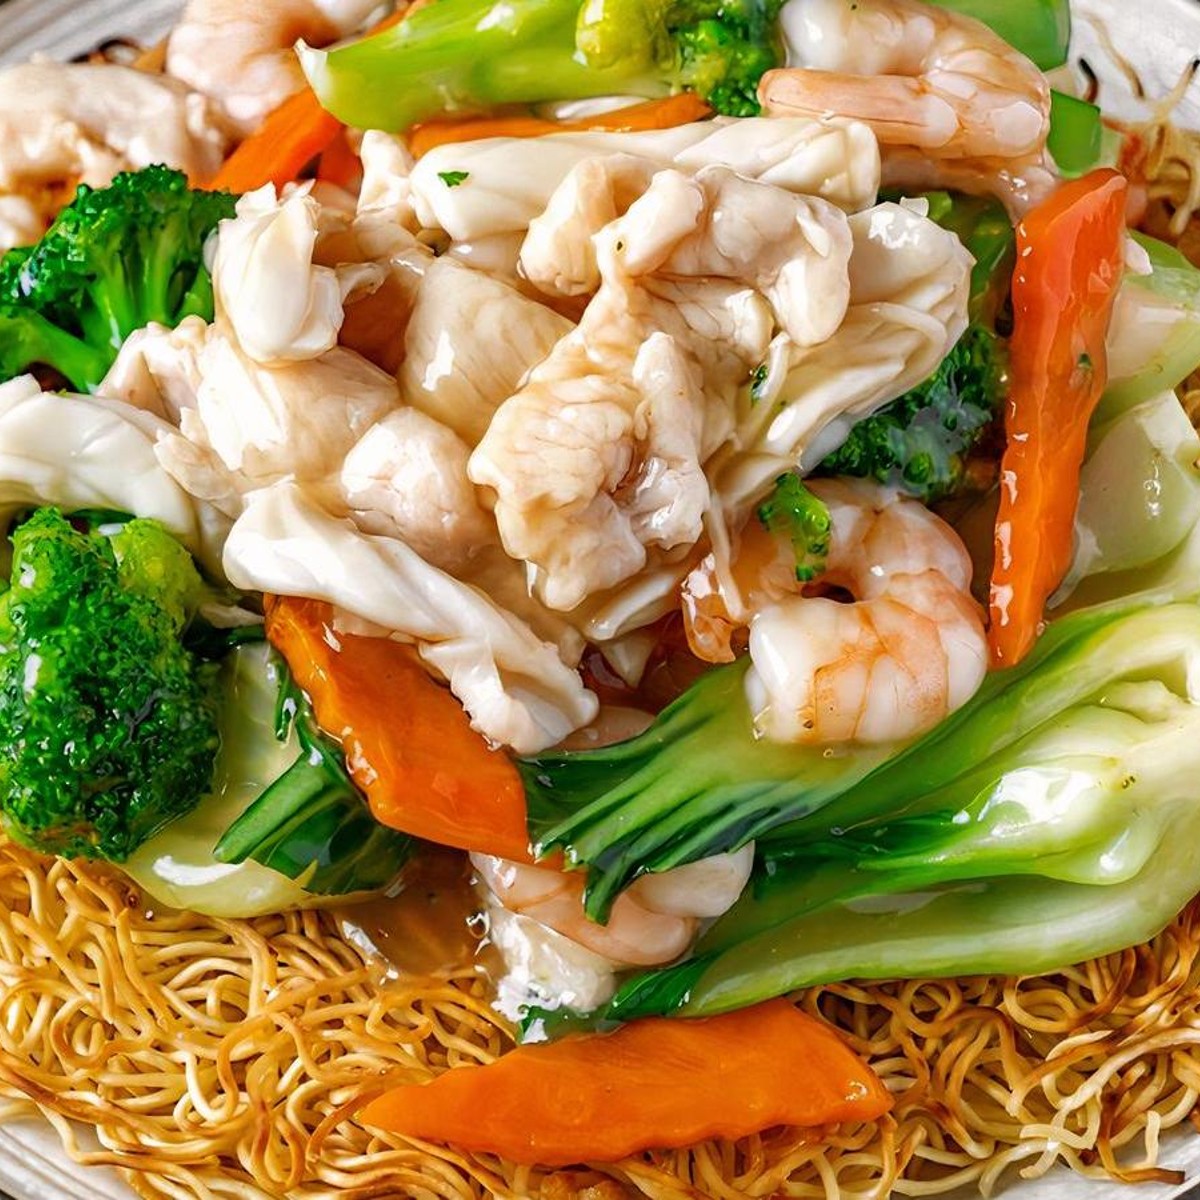 Nouilles chinoises au boeuf et aux légumes - My tasty cuisine